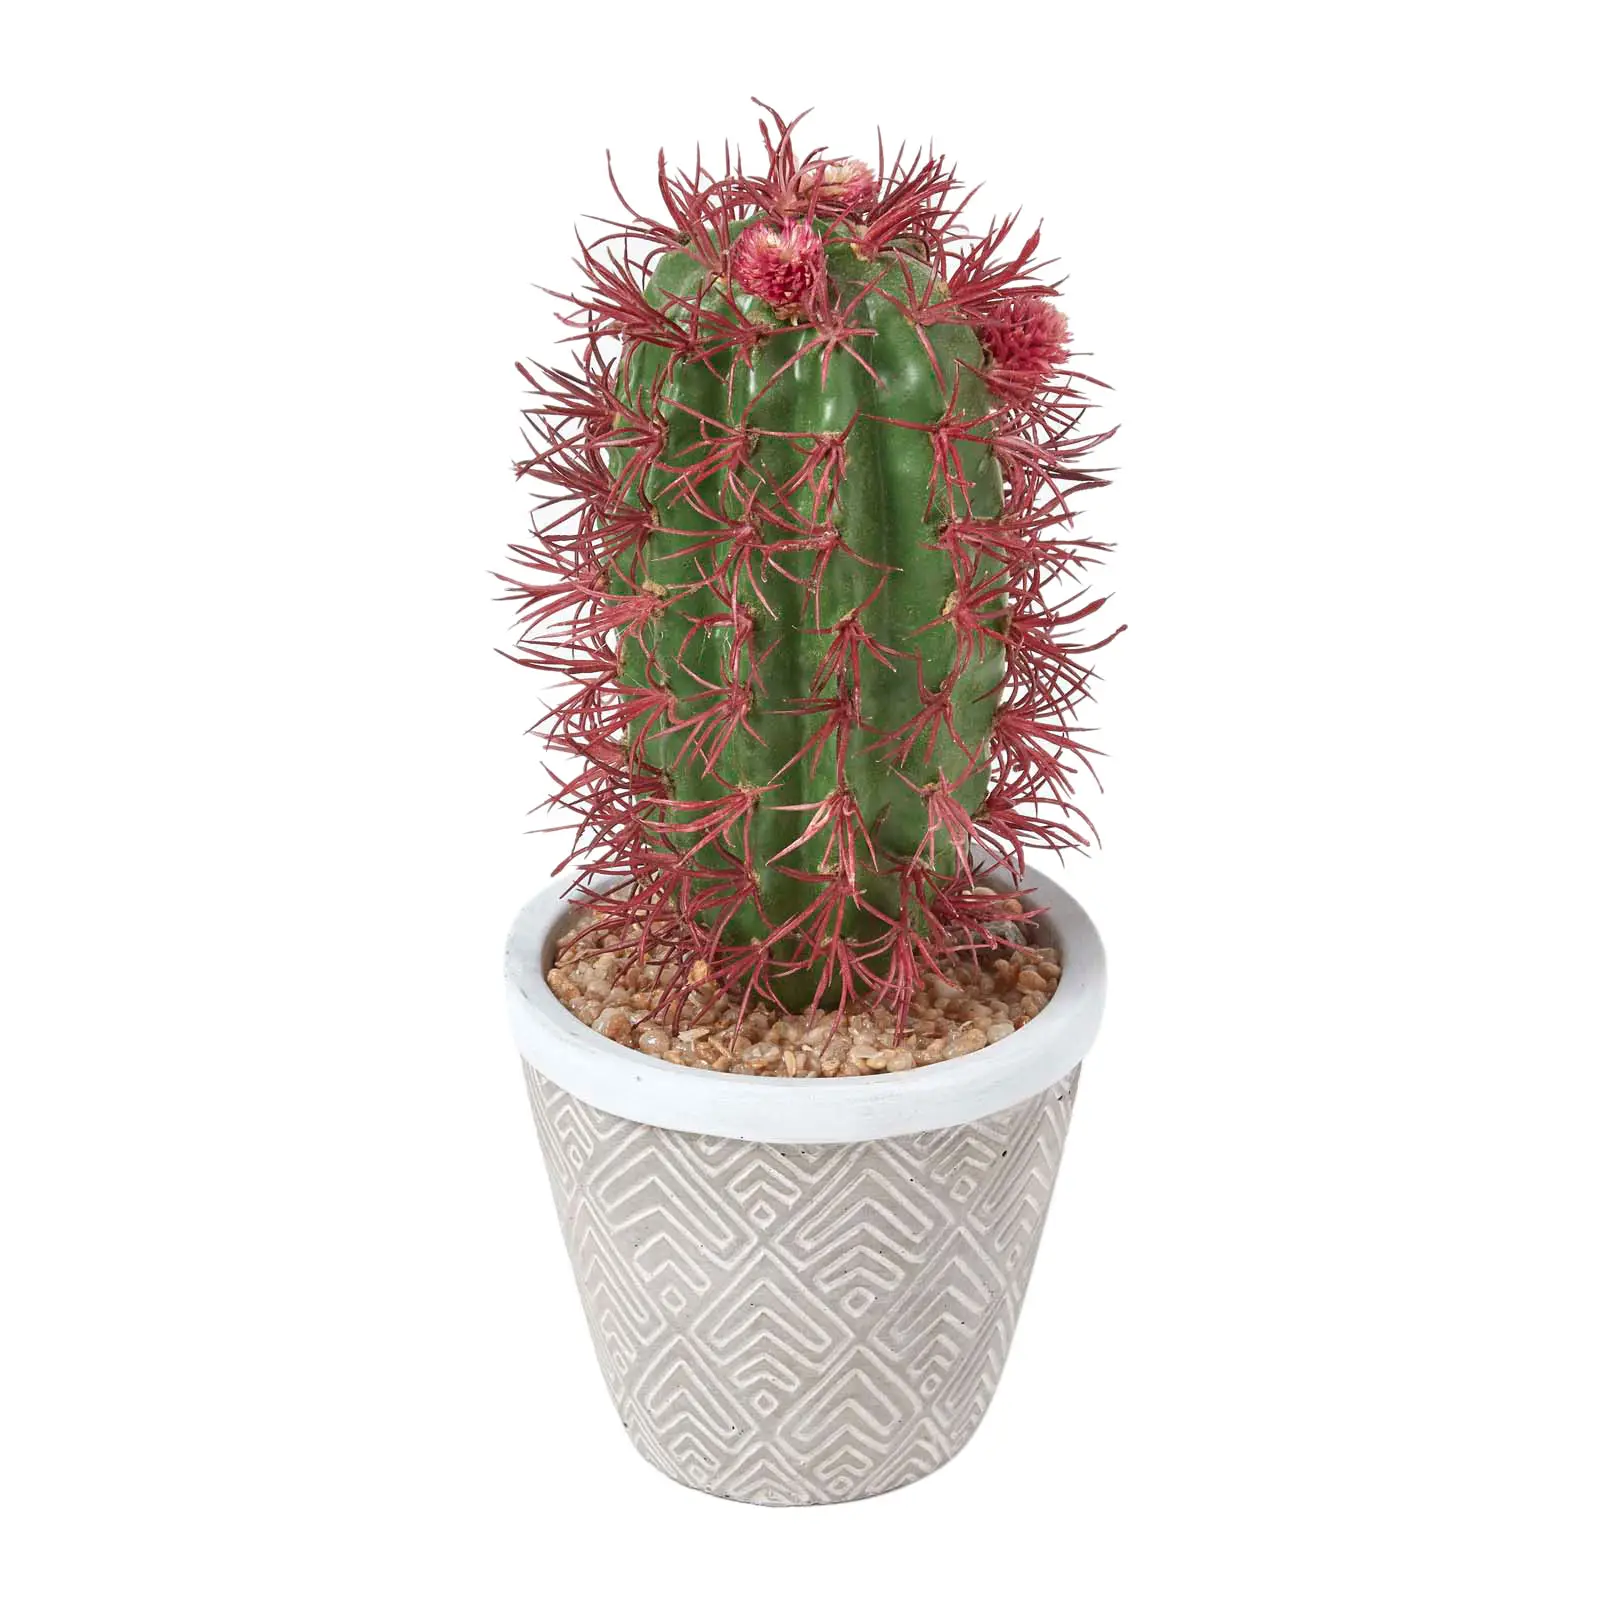 Denmoza K眉nstlicher Kaktus Rhodacantha